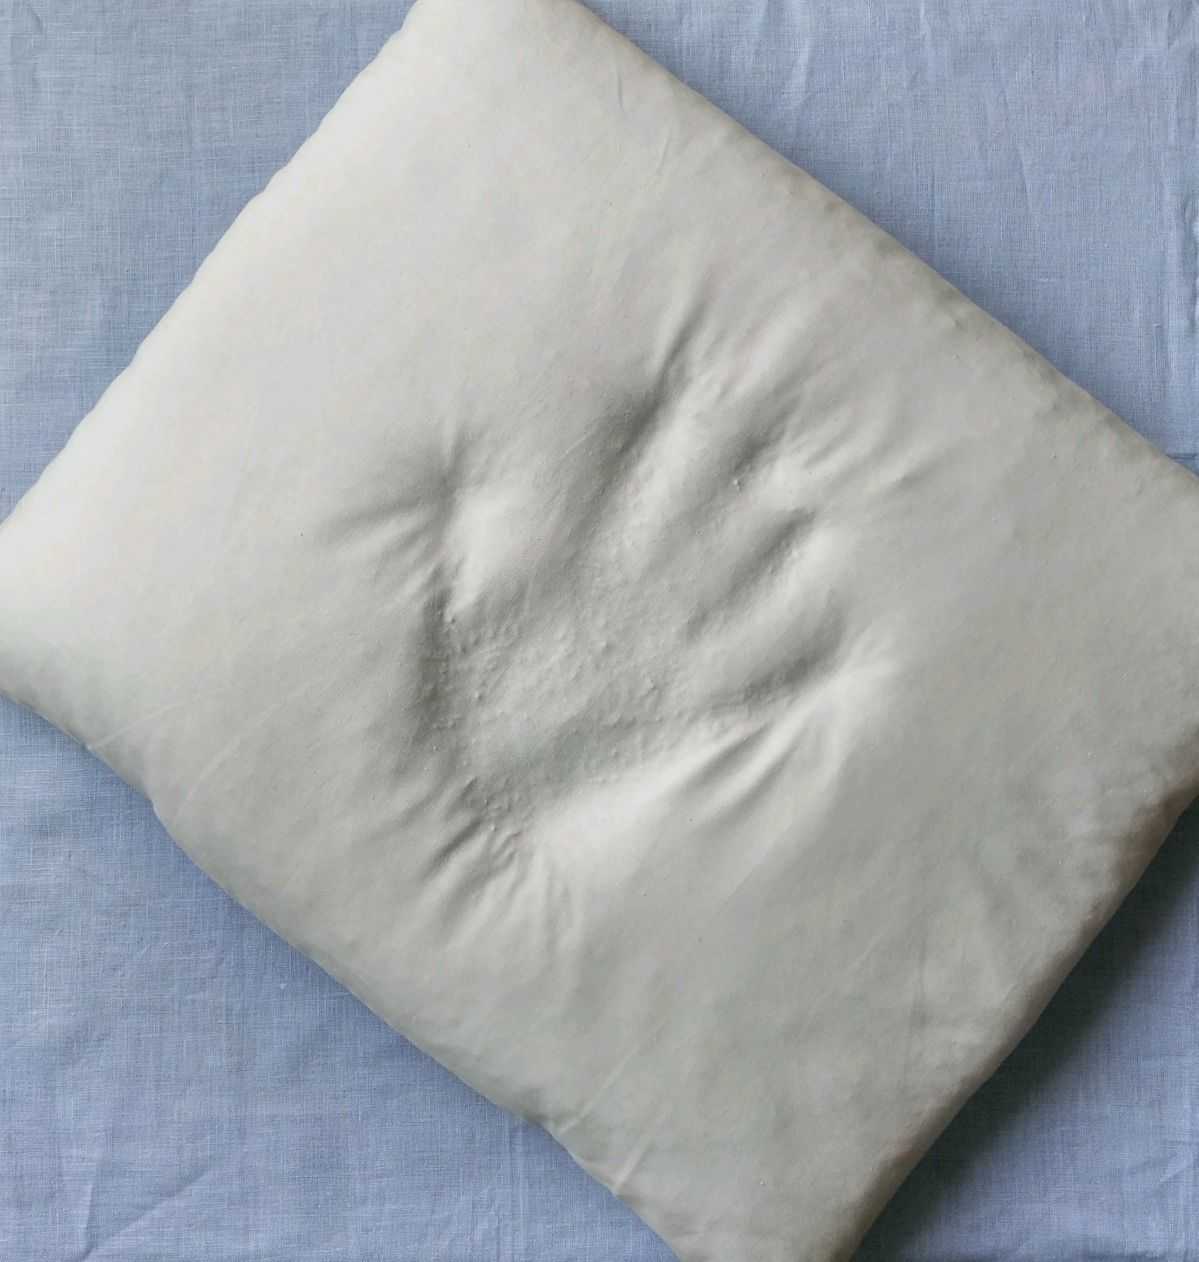 Чем набить подушку своими руками: чем наполнить декоративную и как набивать диванные